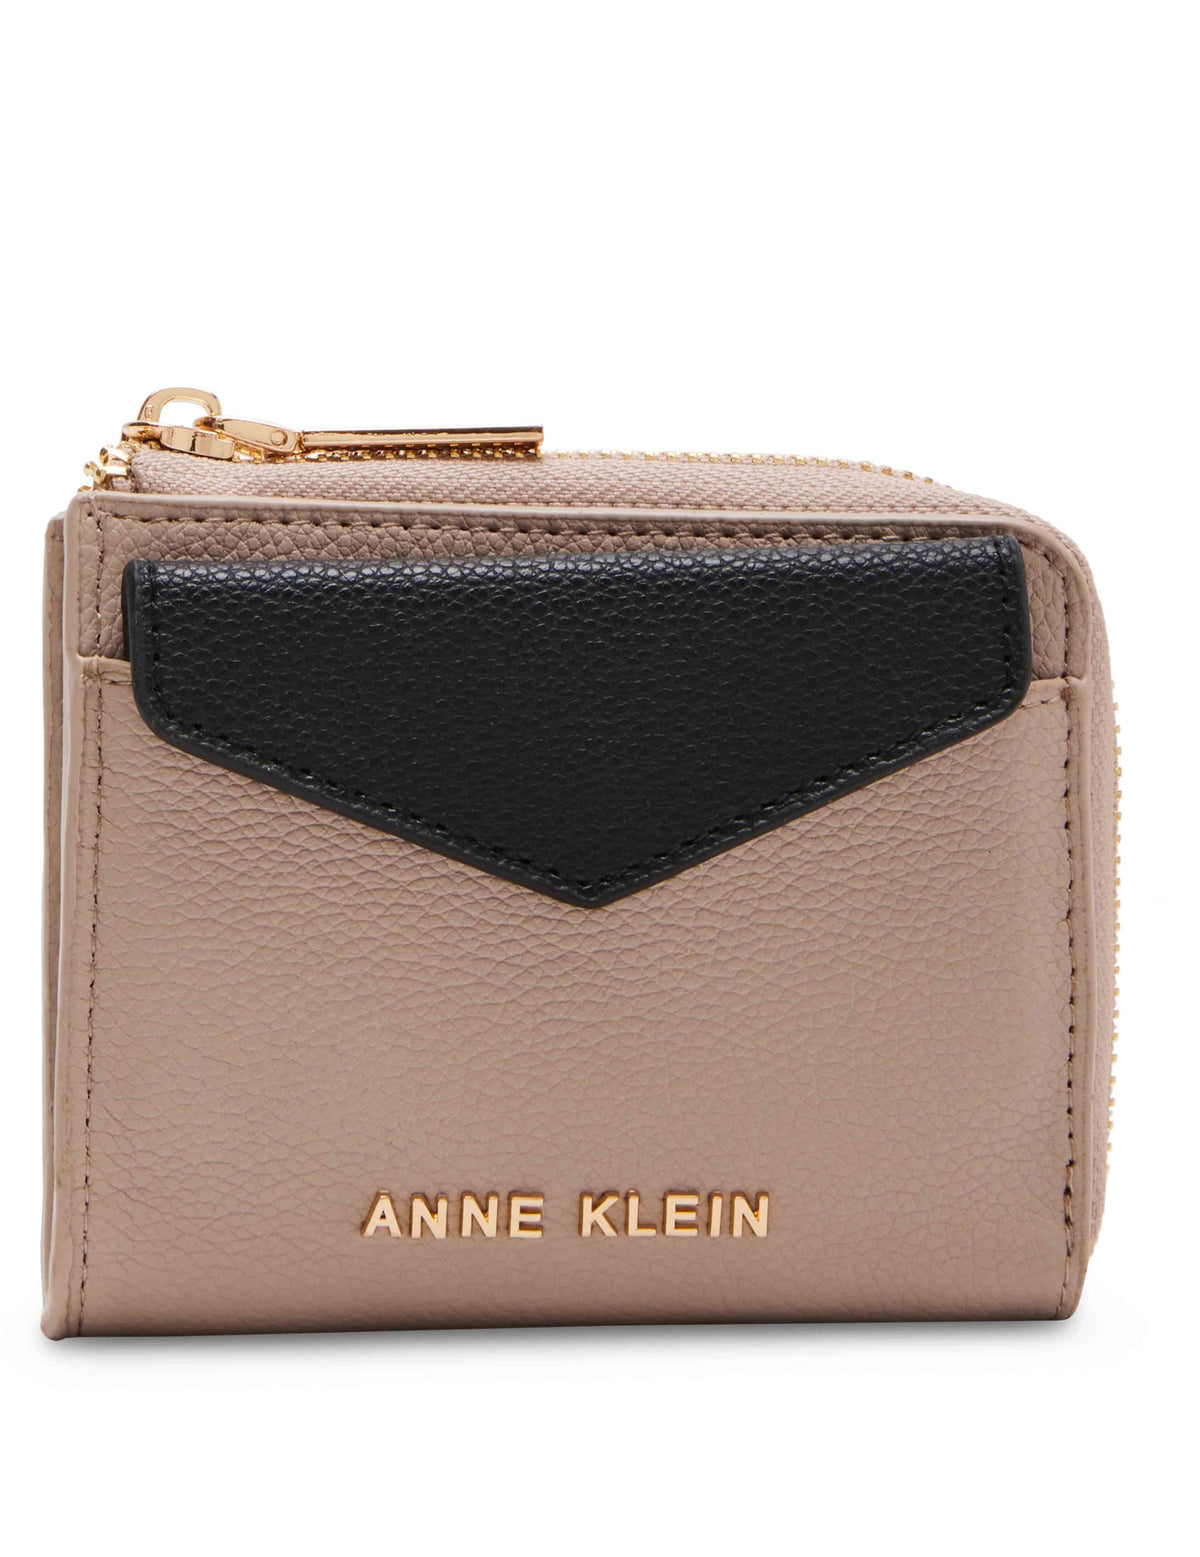 Anne Klein Stone- black AK Envelope Flap Curved Wallet